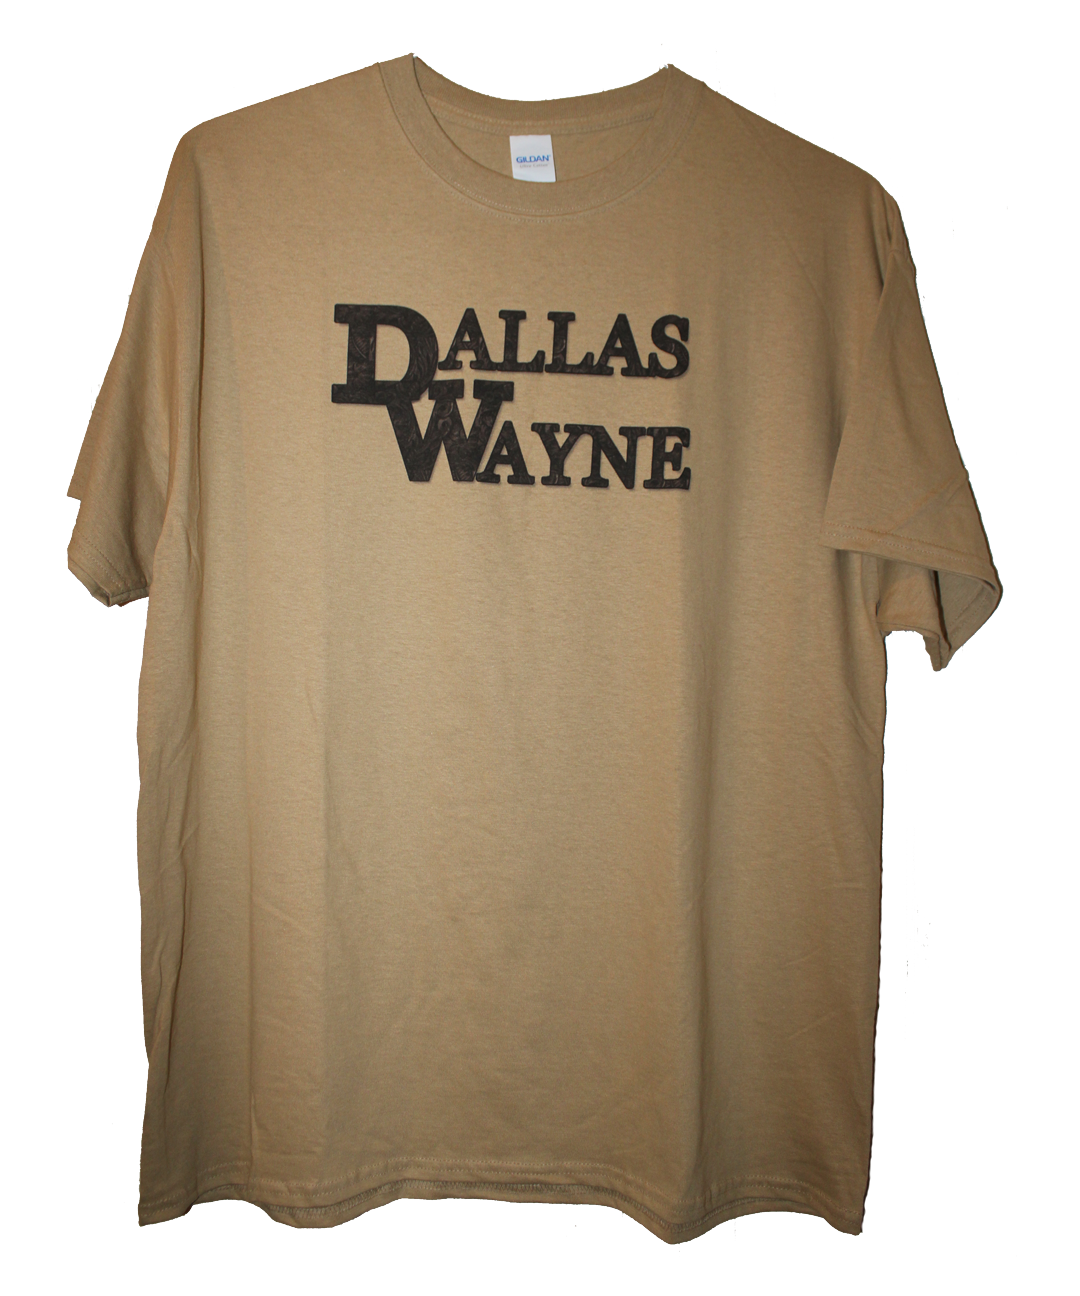 Dallas Wayne T-shirt, Tan